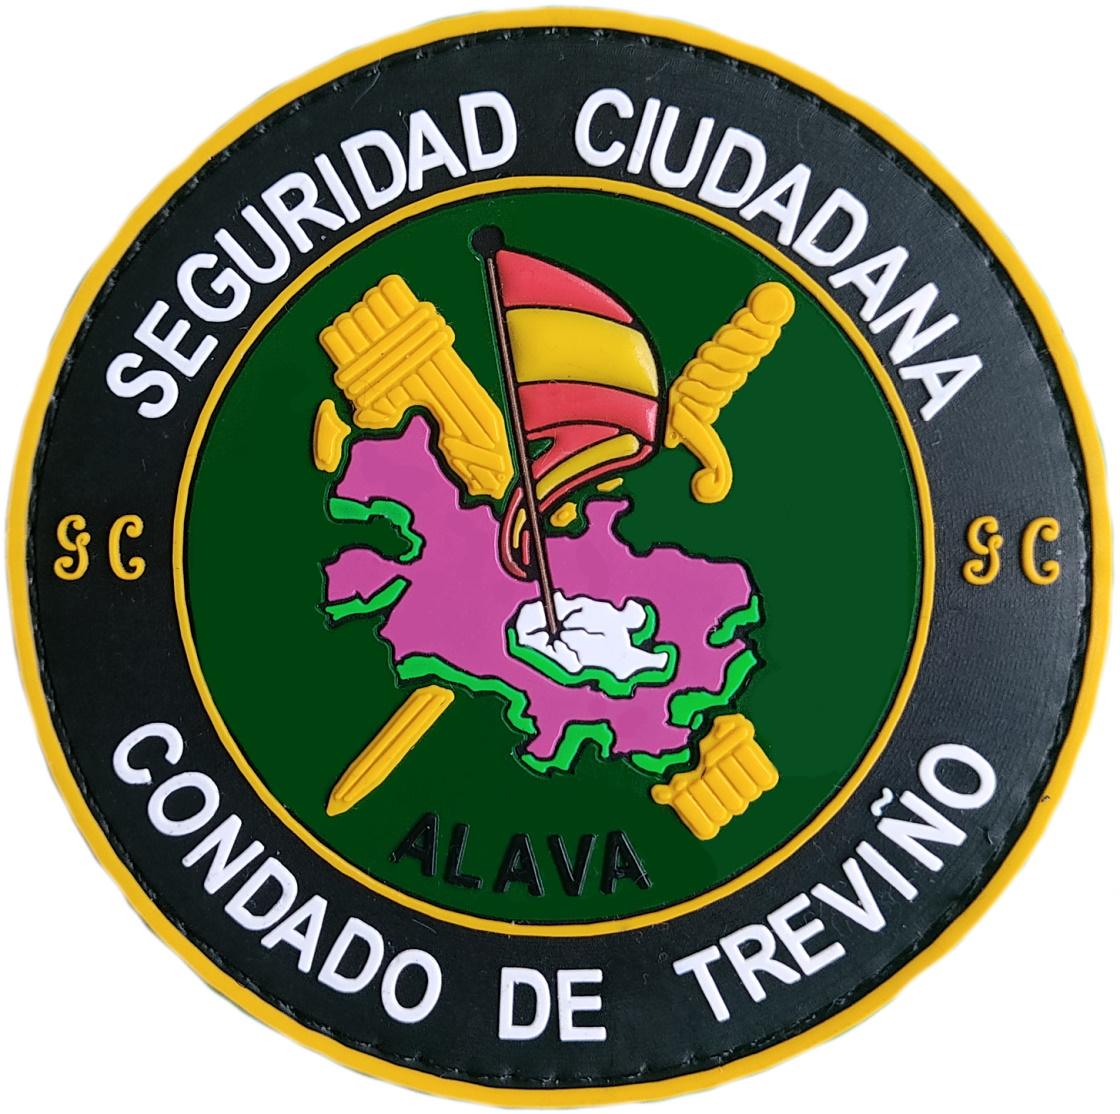 Guardia Civil Condado de Treviño Seguridad Ciudadana parche insignia emblema Gendarmerie